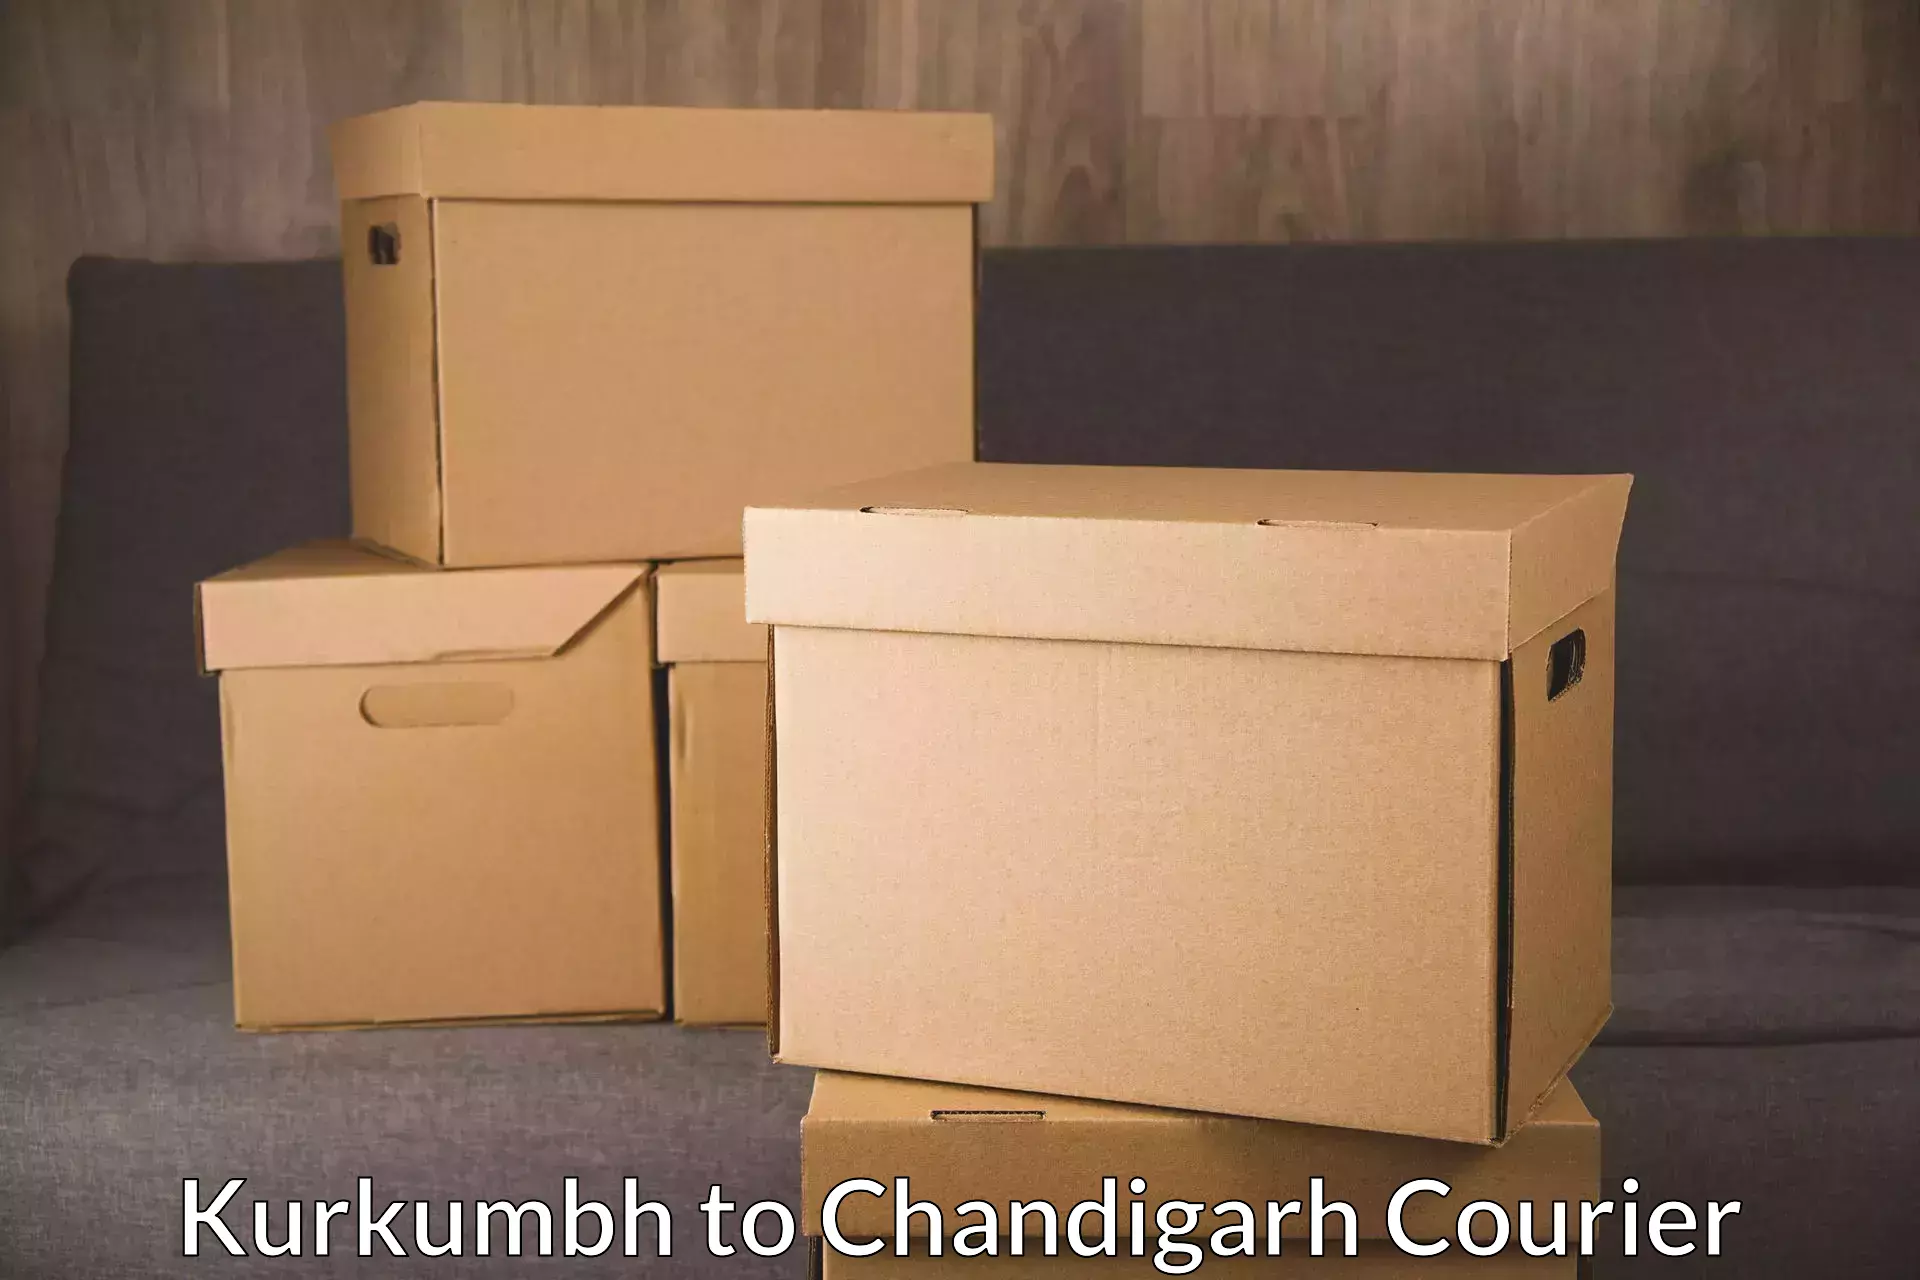 Smart shipping technology Kurkumbh to Chandigarh